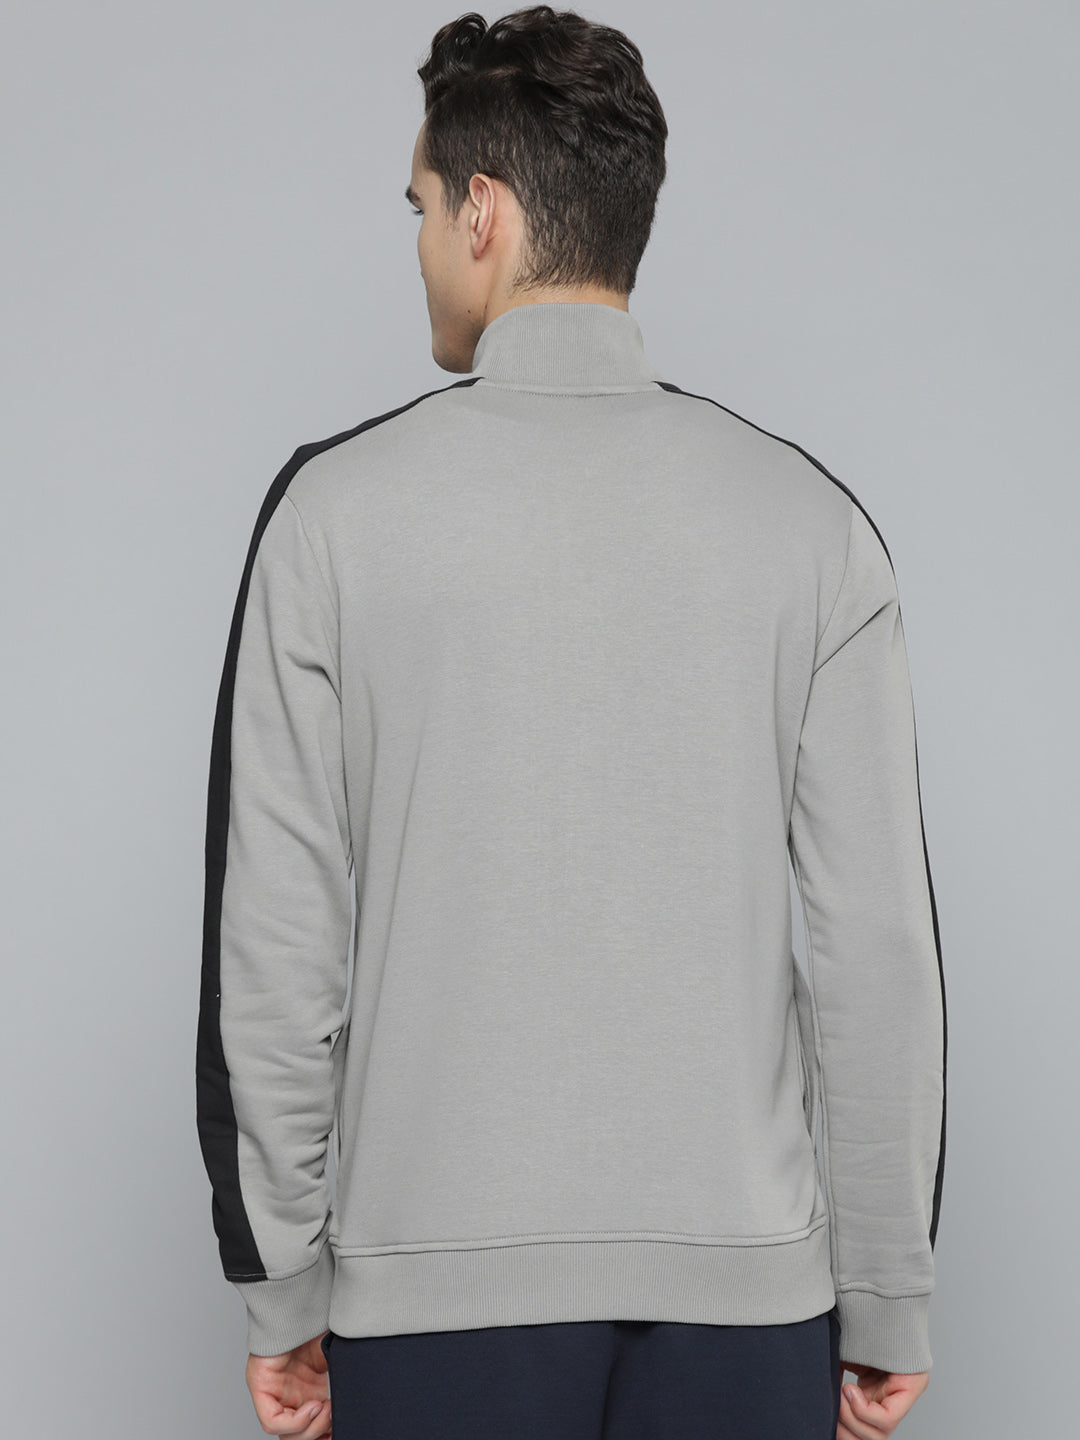 Alcis Men Grey Colourblocked Sweatshirt